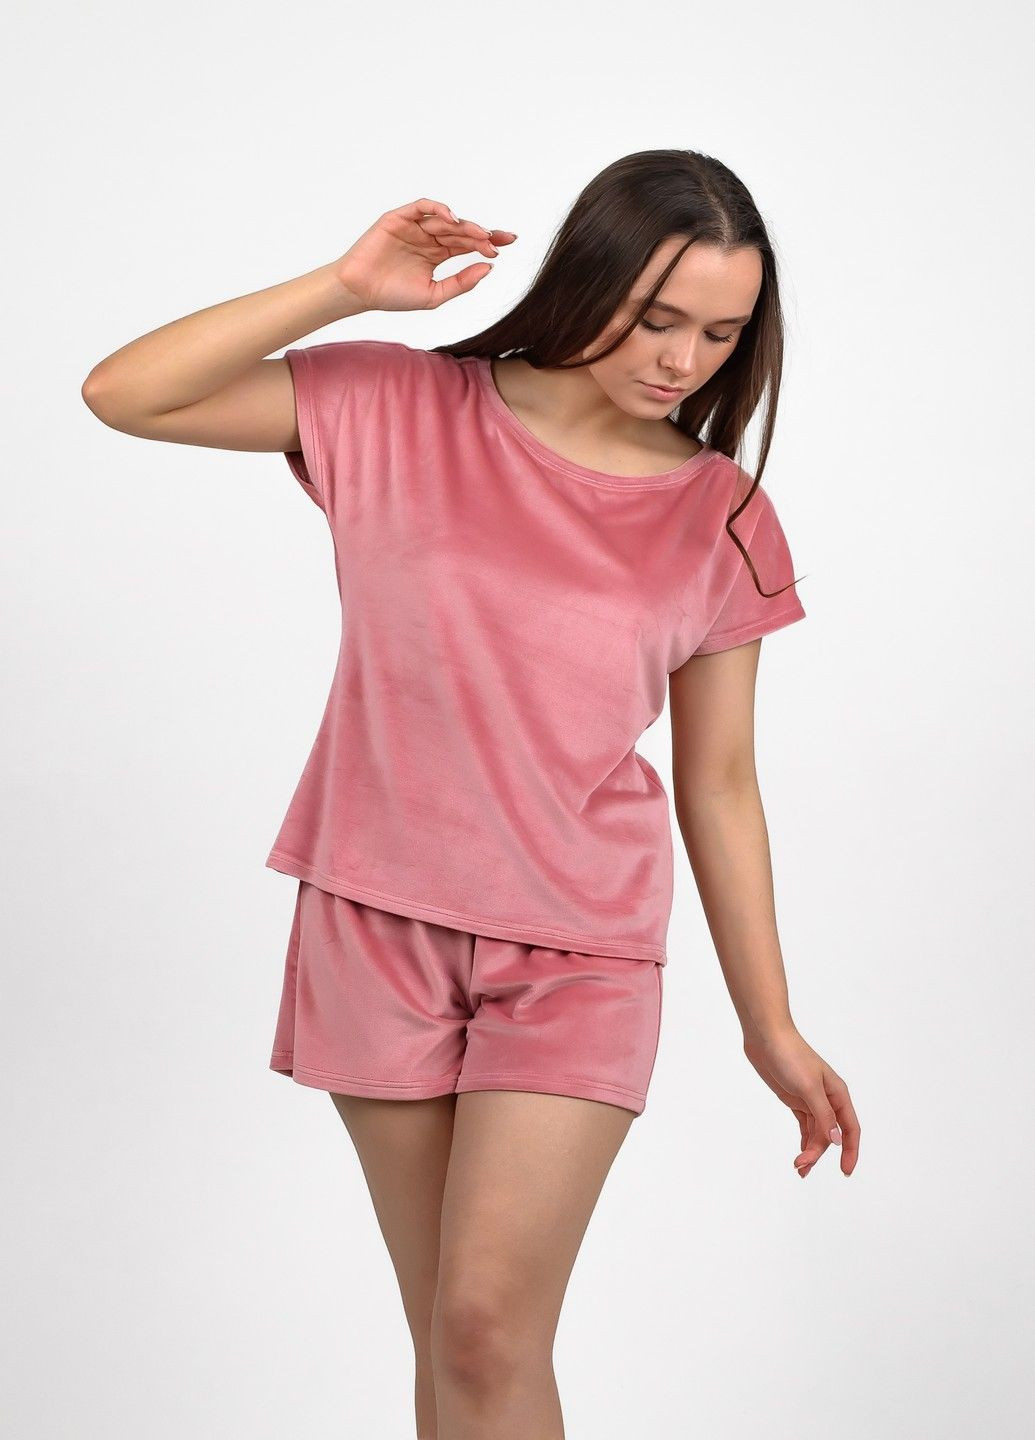 Розовая женская велюровая пижама NEL